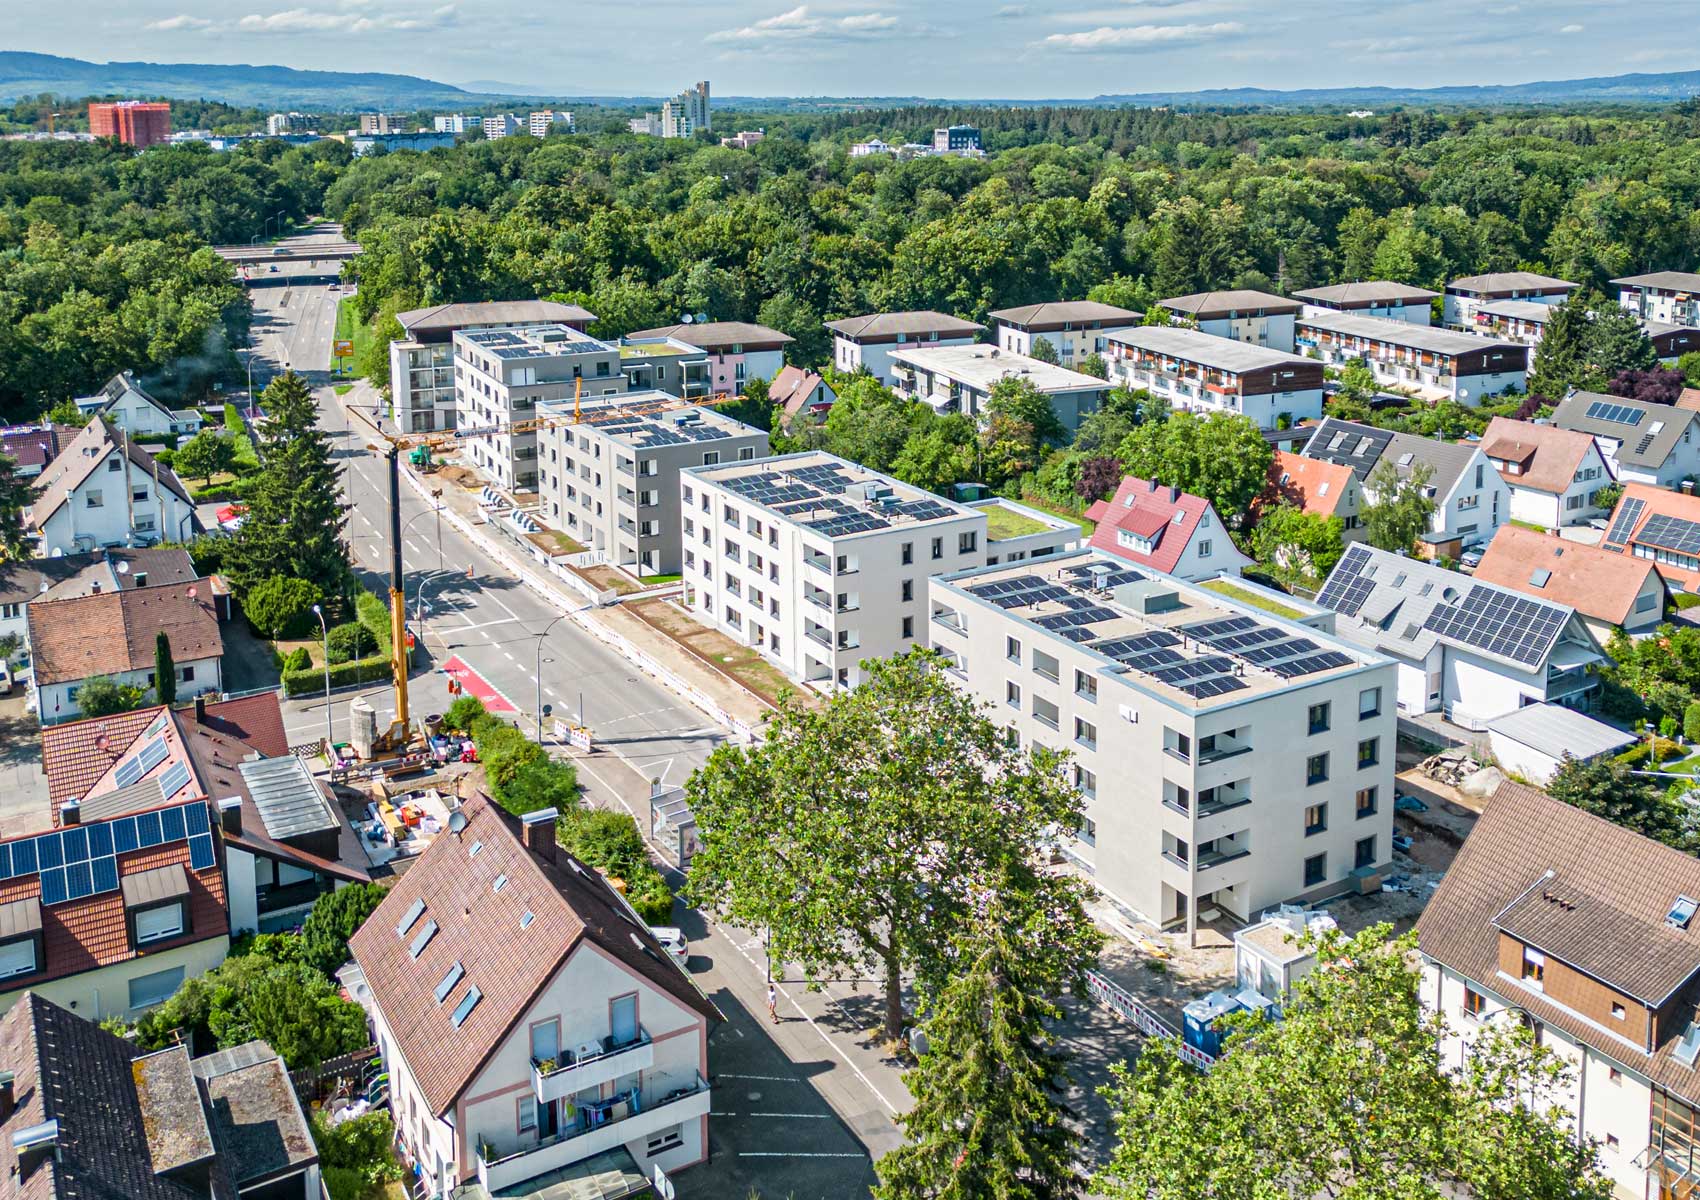 Das Bild zeigt den Neubau in der Elsässer Straße in Freiburg: 4 neue Wohnhäuser in Bauhaus-Bauweise.